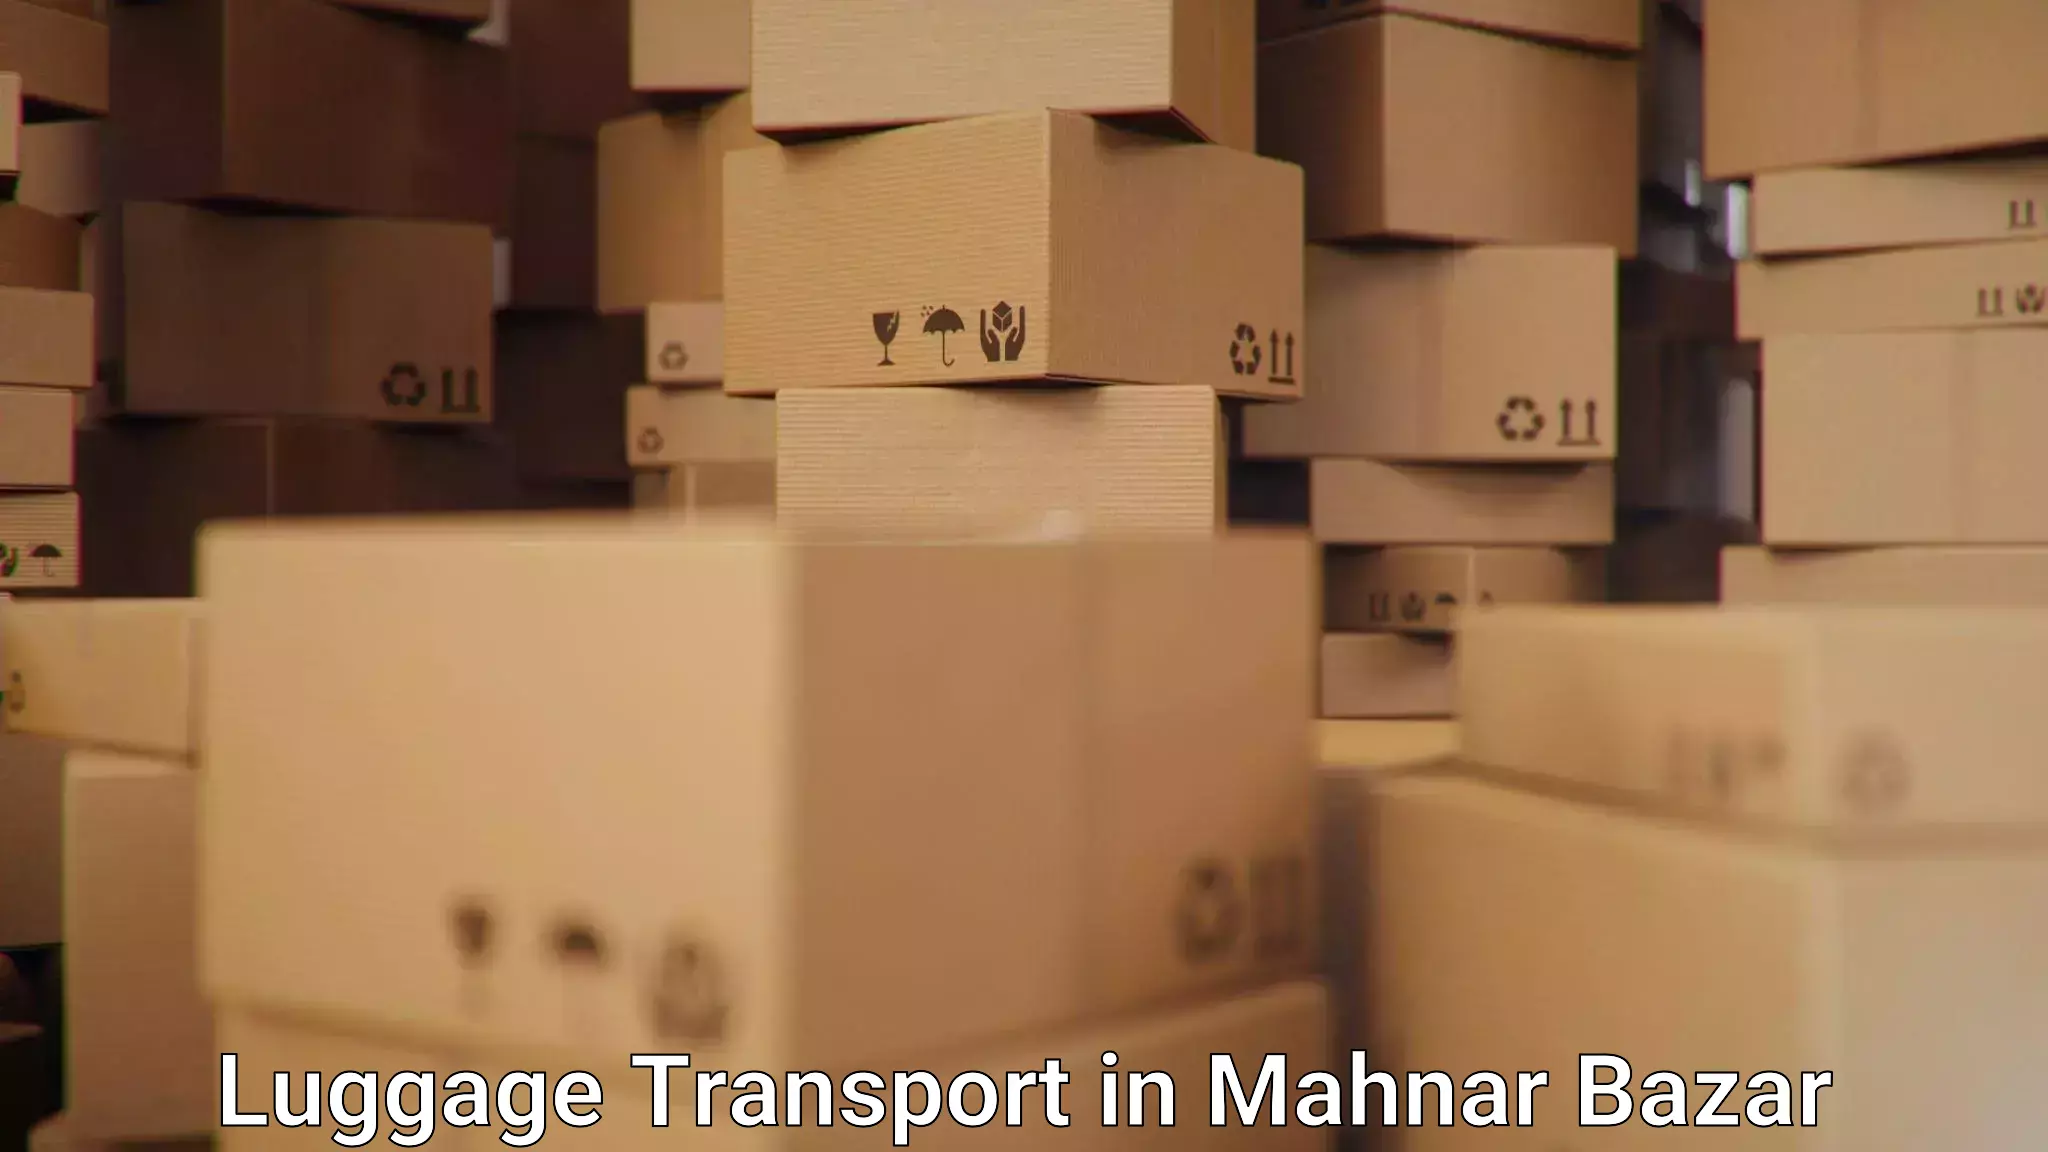 Luggage shipping estimate in Mahnar Bazar